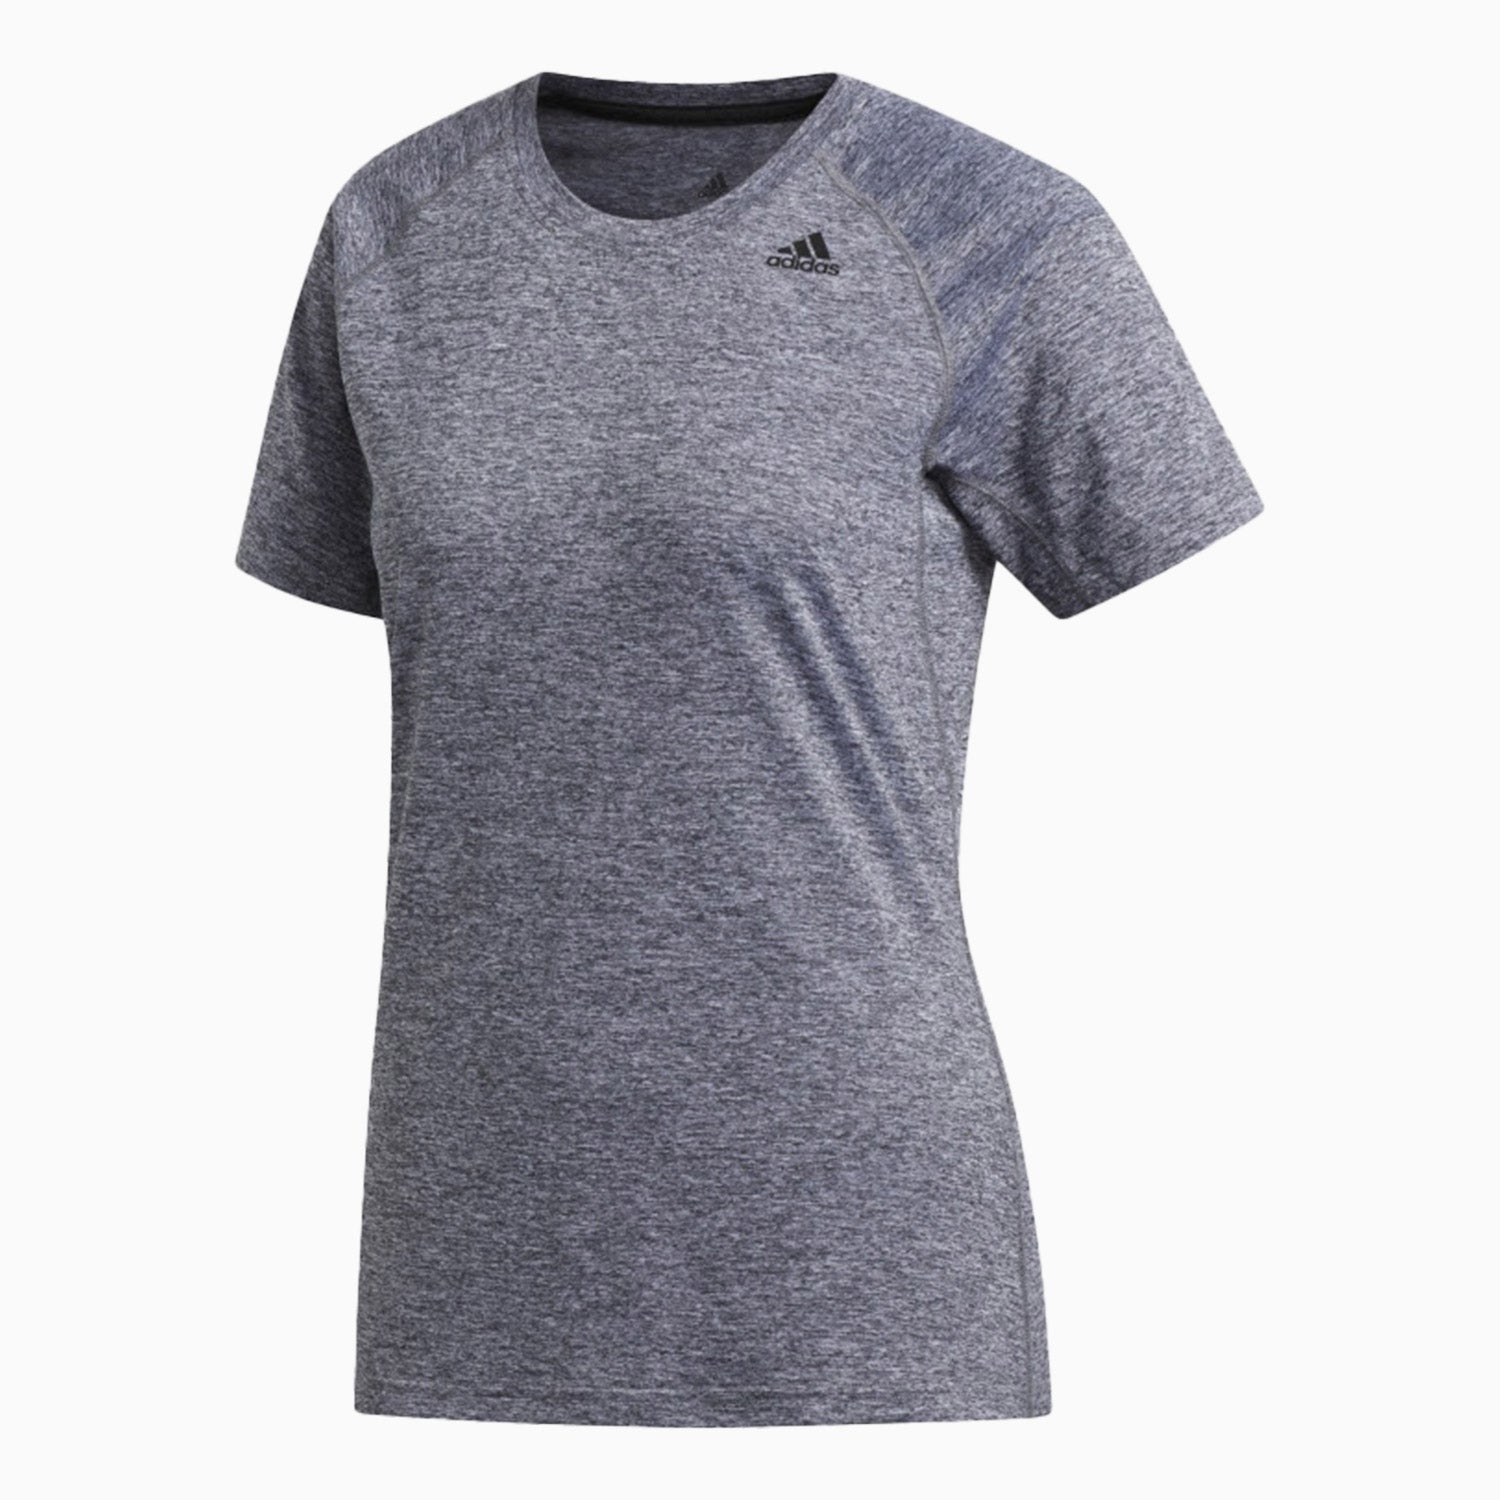 adidas-womens-tech-prime-3s-t-shirt-eb4512